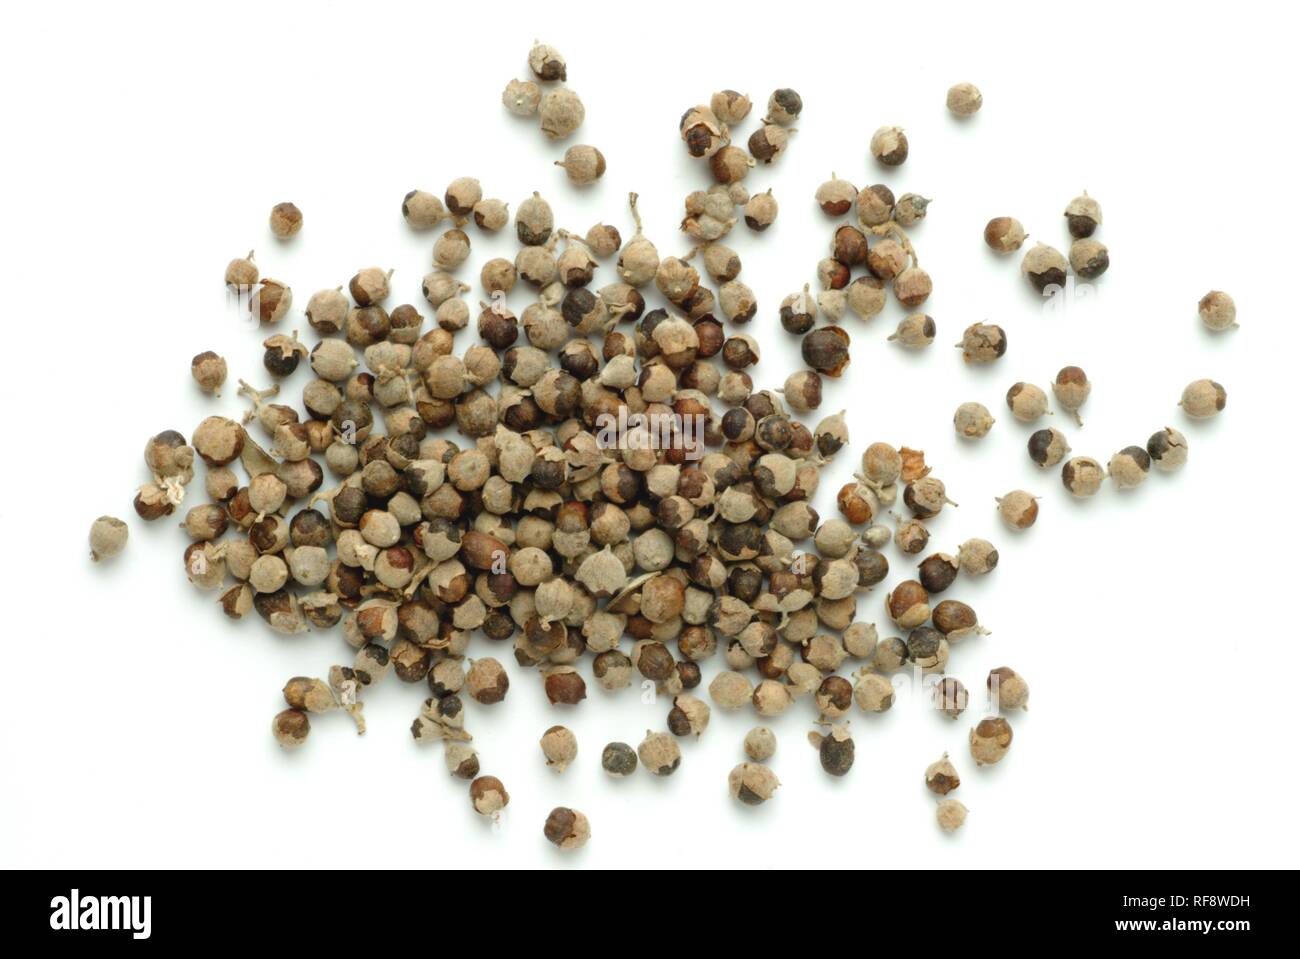 Keusch Baum oder Chasteberry oder Mönchspfeffer (Vitex agnus-castus), Samen, Heilpflanzen, Tee Stockfoto